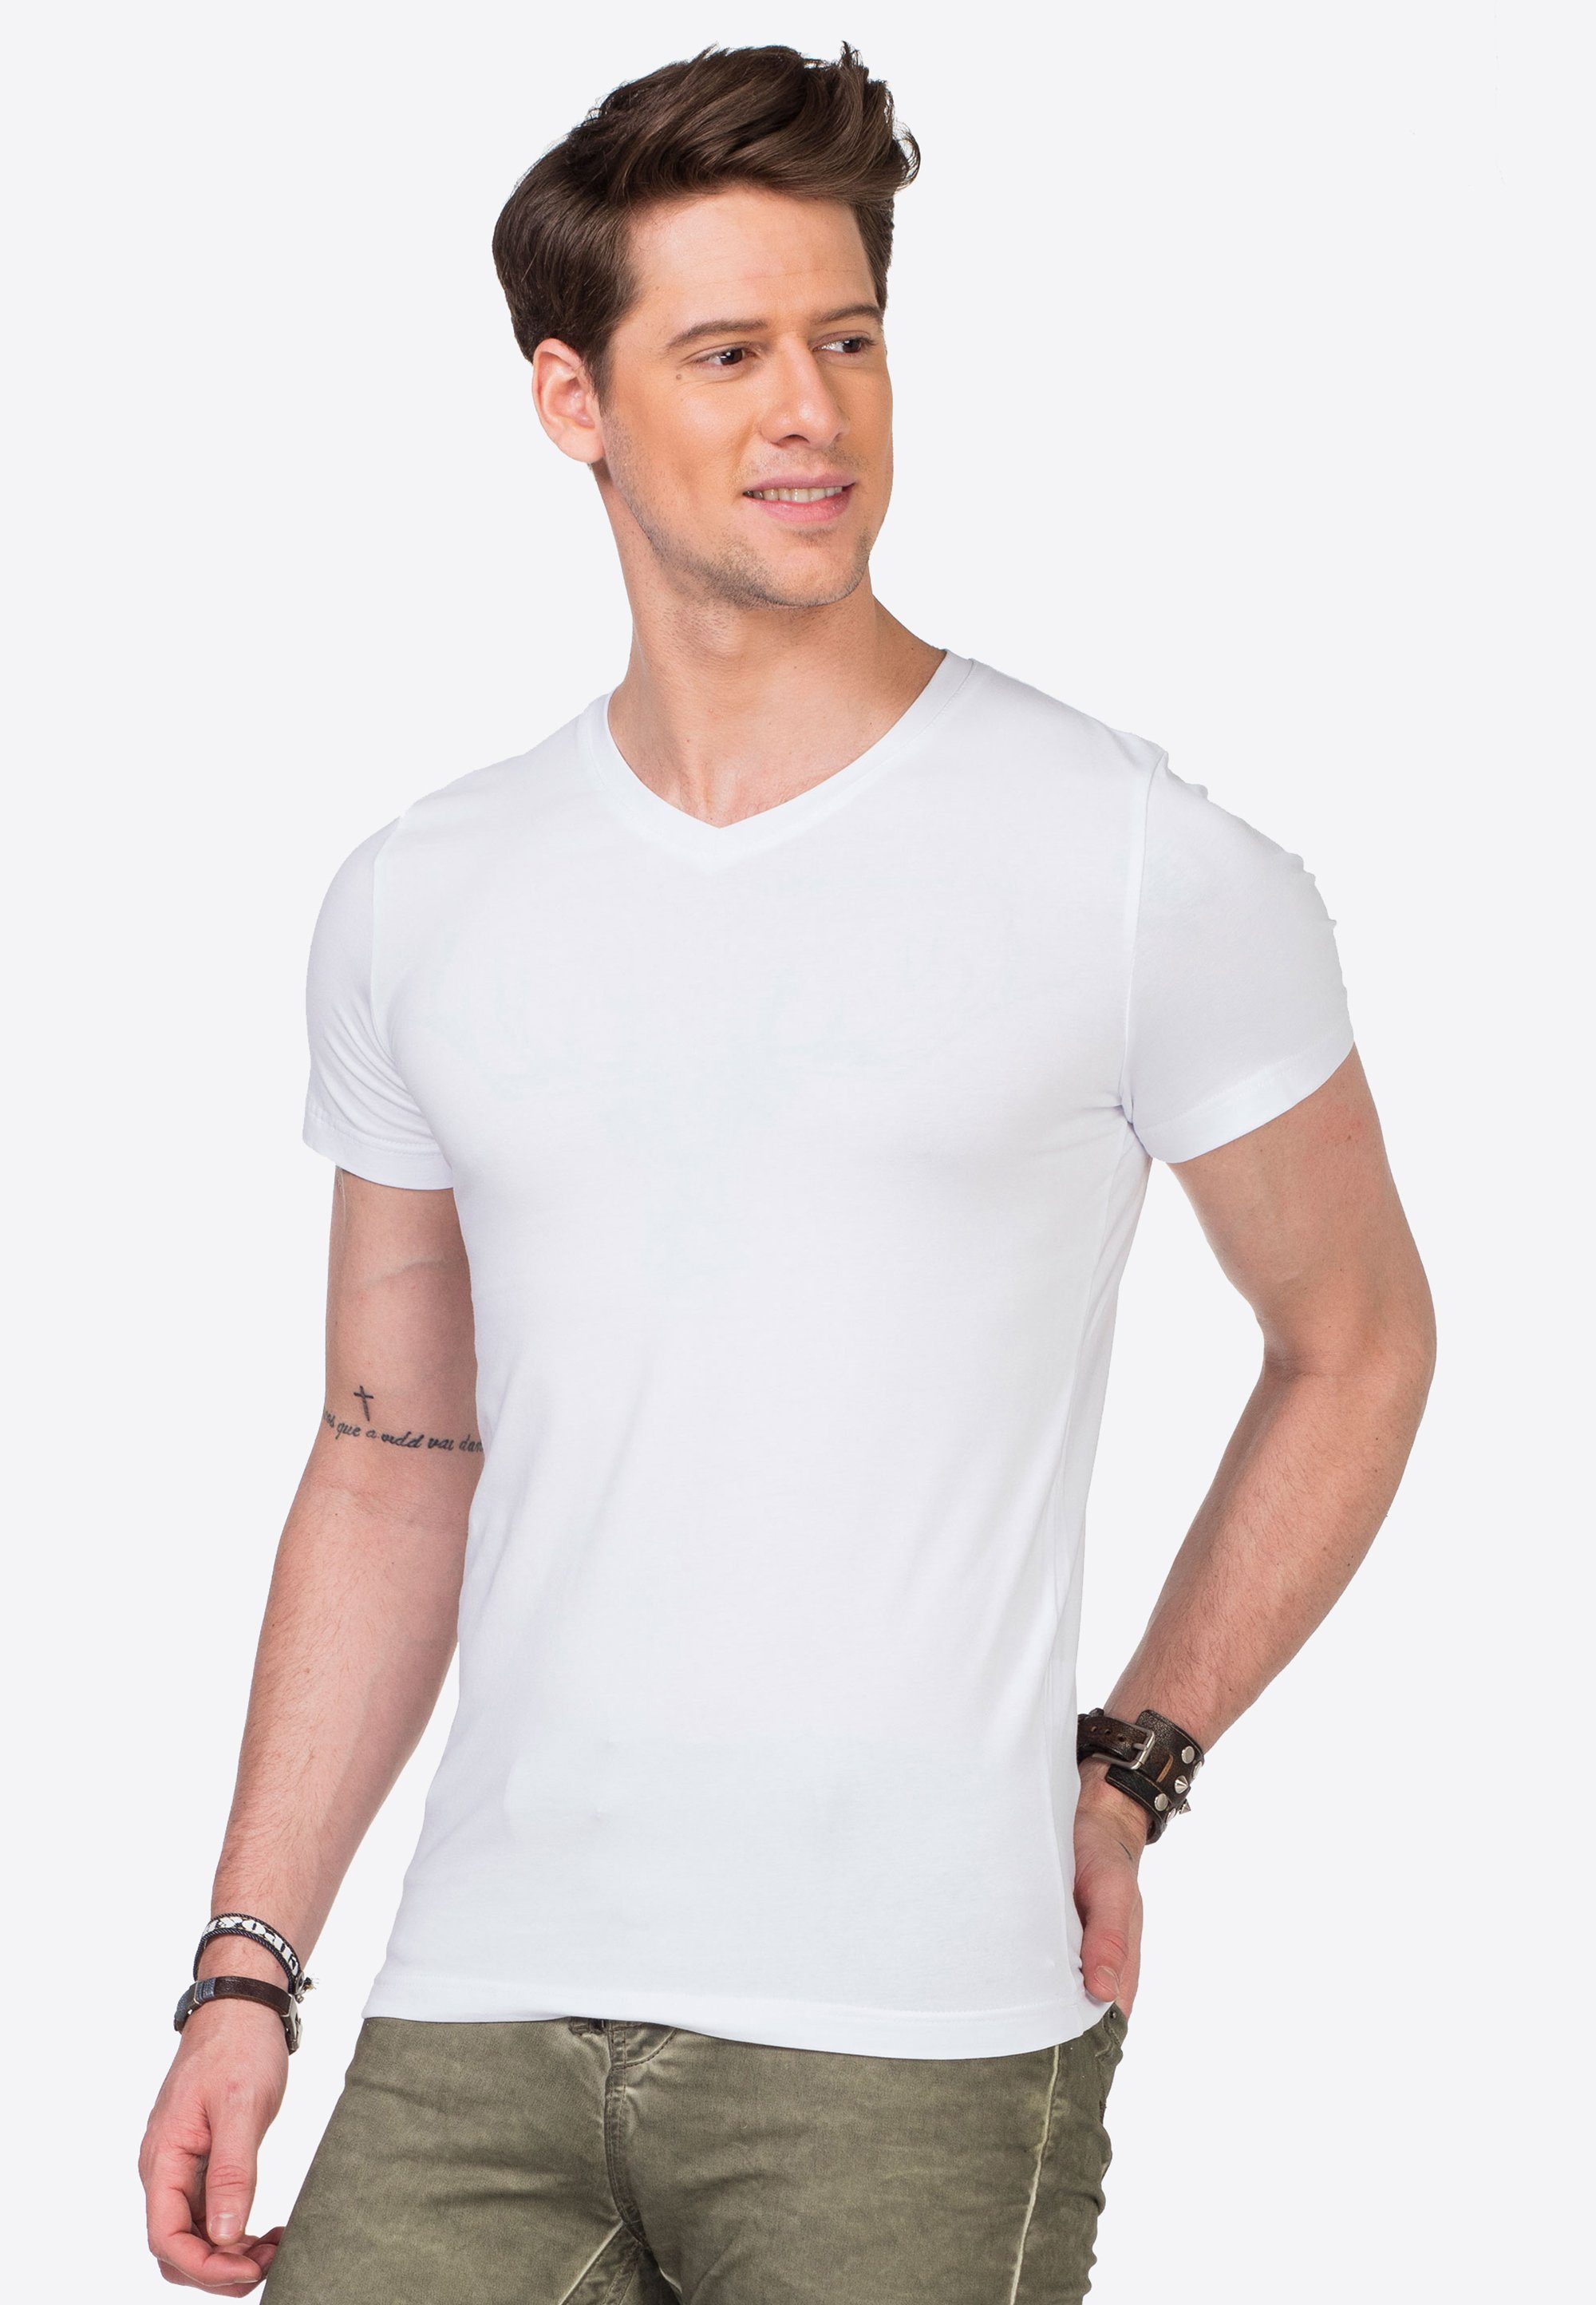 modernem Baxx & V-Ausschnitt mit weiß Cipo T-Shirt